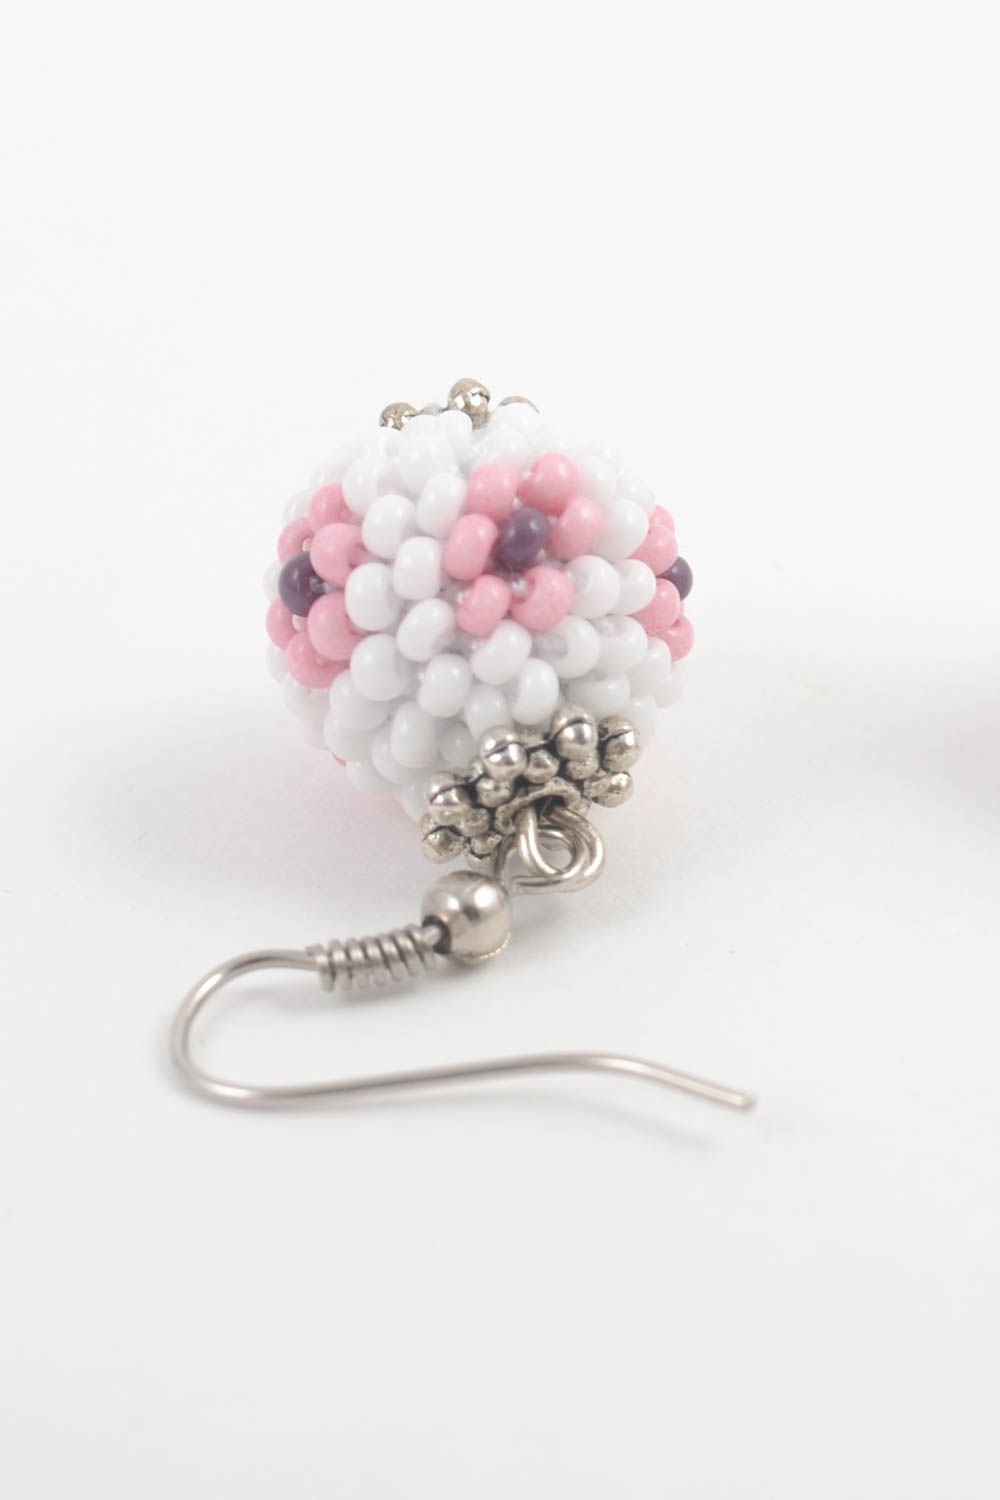 Handmade Ohrringe für Frauen Schmuck Ohrhänger Modeschmuck Ohrringe weiß rosa foto 5